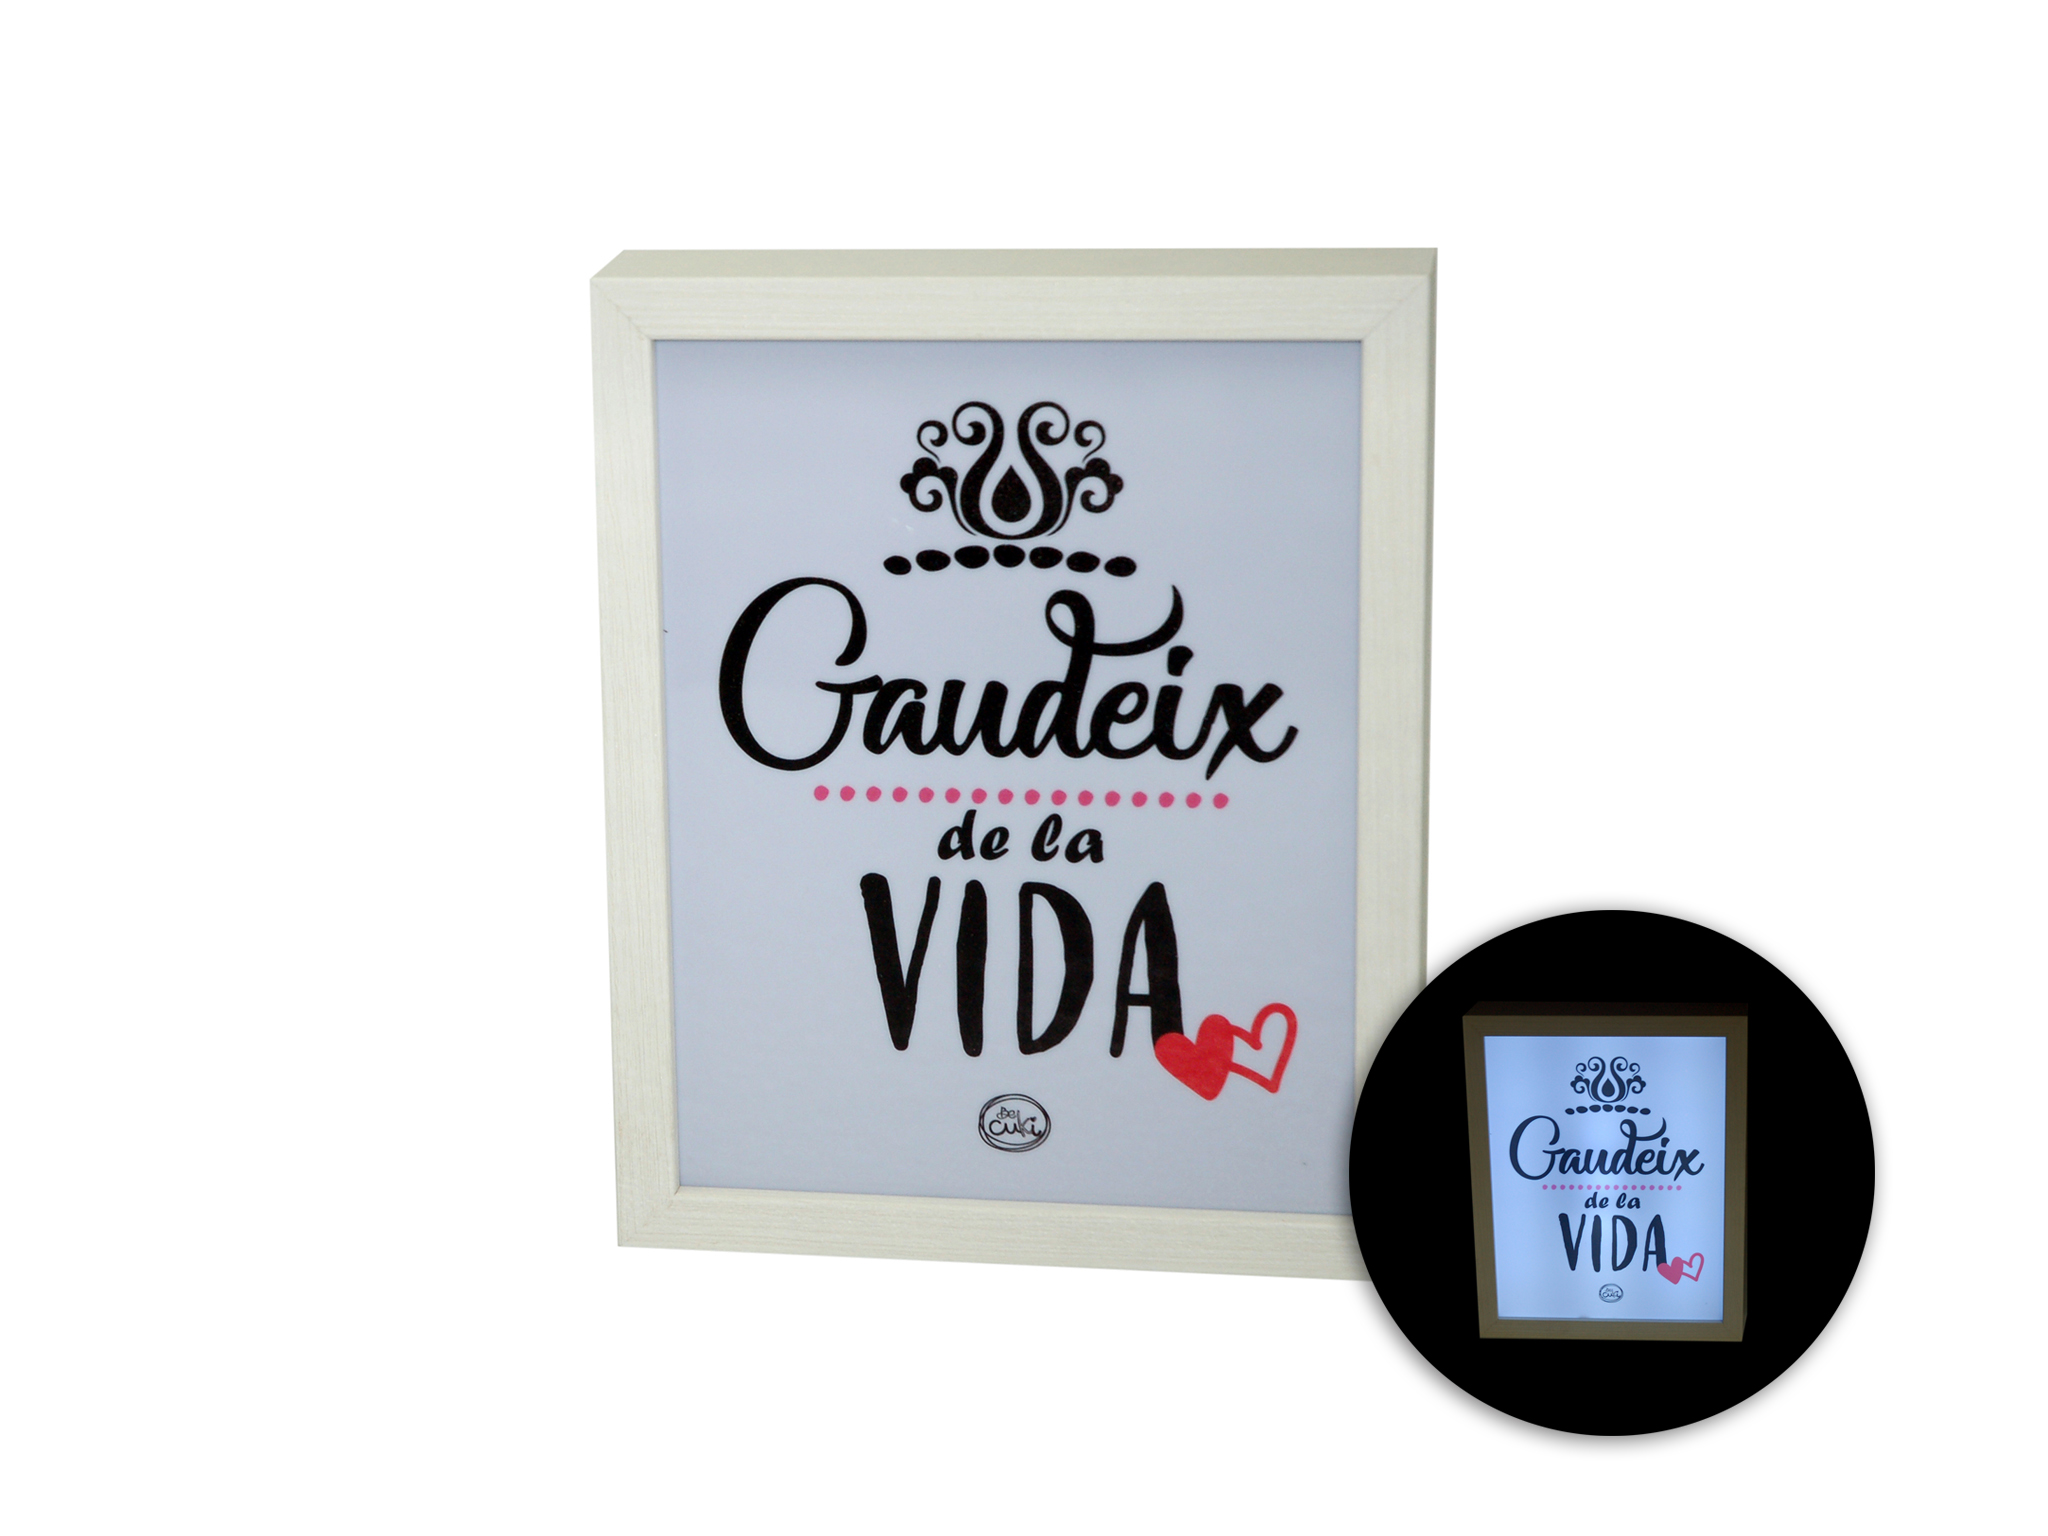 CAIXA LUZ 20X25 GAUDEIX DE LA VIDA cod. 3001150